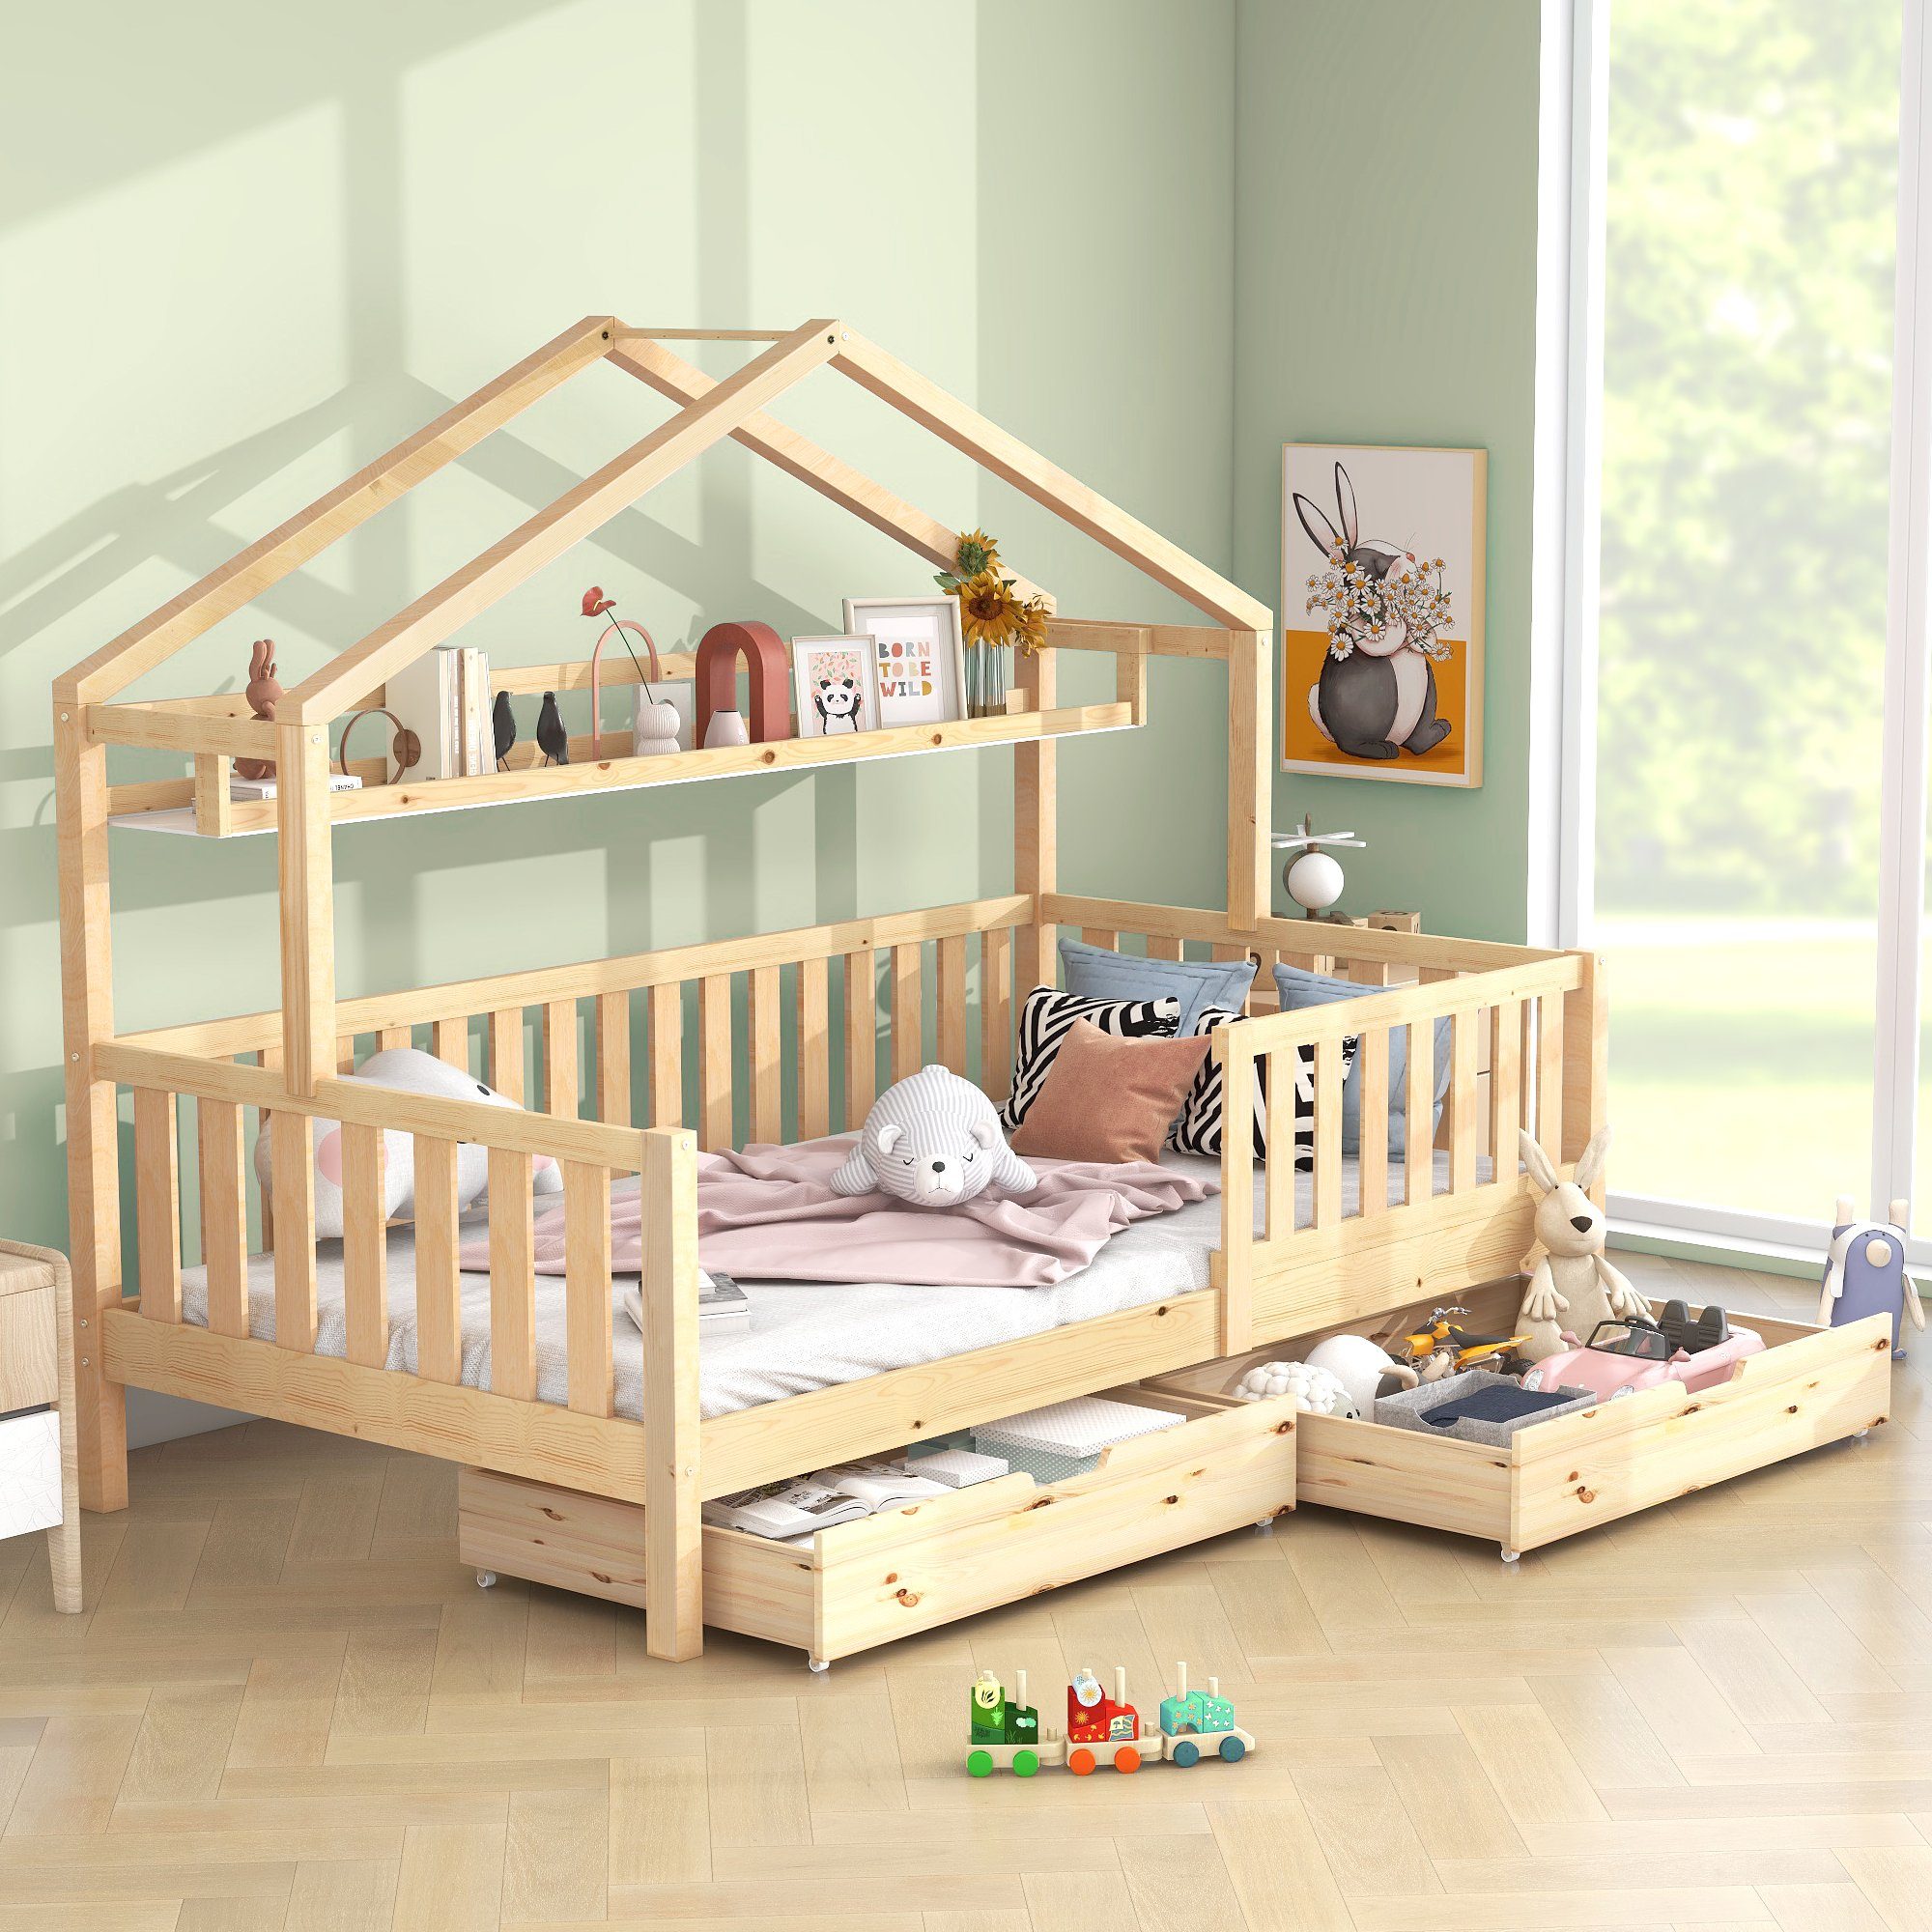 SOFTWEARY Kinderbett Hausbett mit Lattenrost und Schubladen (90x200 cm), Holzbett aus Kiefer, Einzelbett inkl. Rausfallschutz